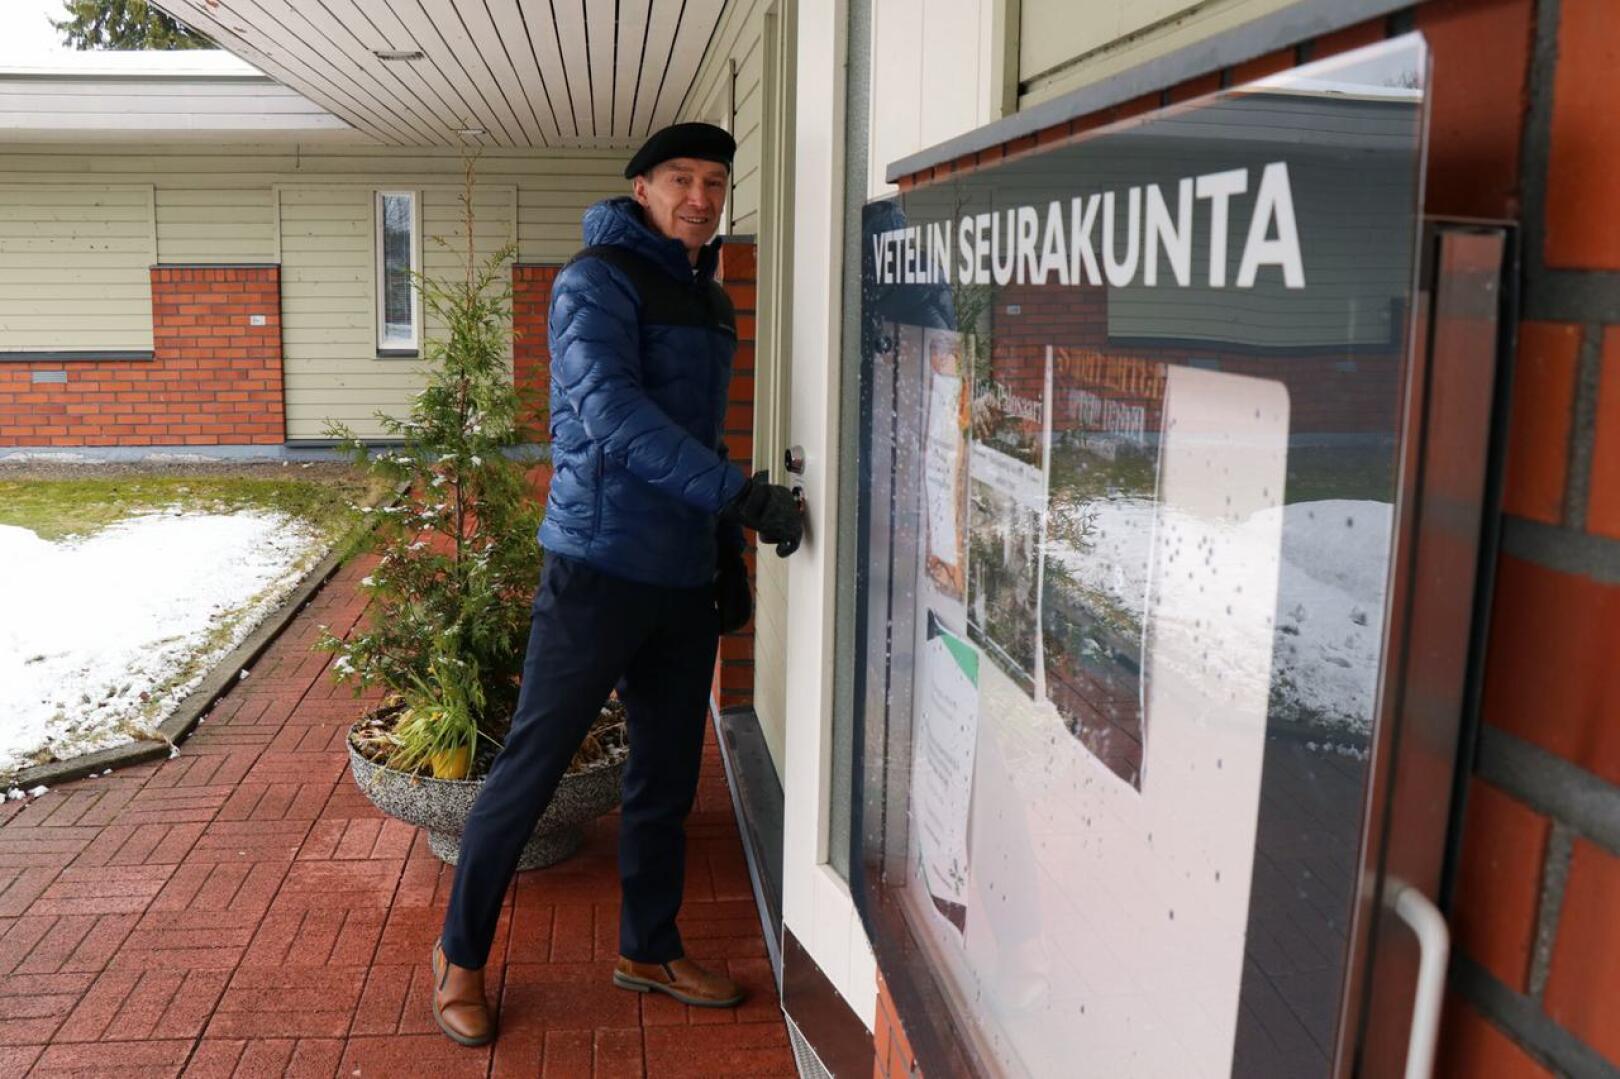 Seurakuntavaalien ennakkoäänestys päättyy lauantaina. Vetelin kirkkoherranviraston ovella kirkkoherra Vesa Parpala.